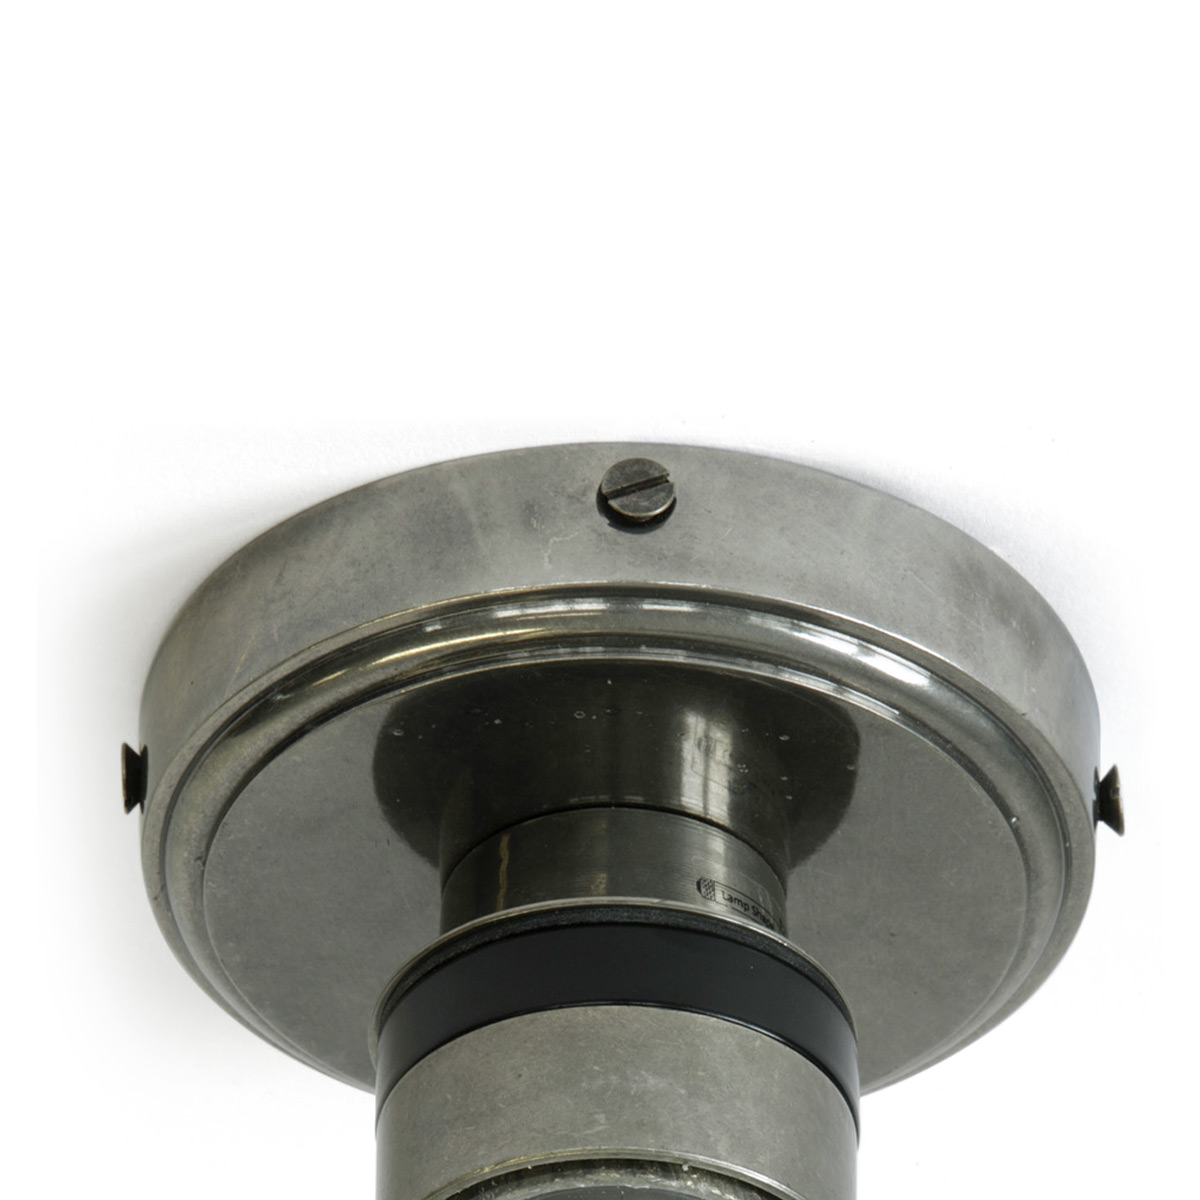 Bad-Deckenlampe mit kleinem Glas-Zylinder (klar oder prismatisch), IP65: Deckenteil Messing alt-silbern patiniert